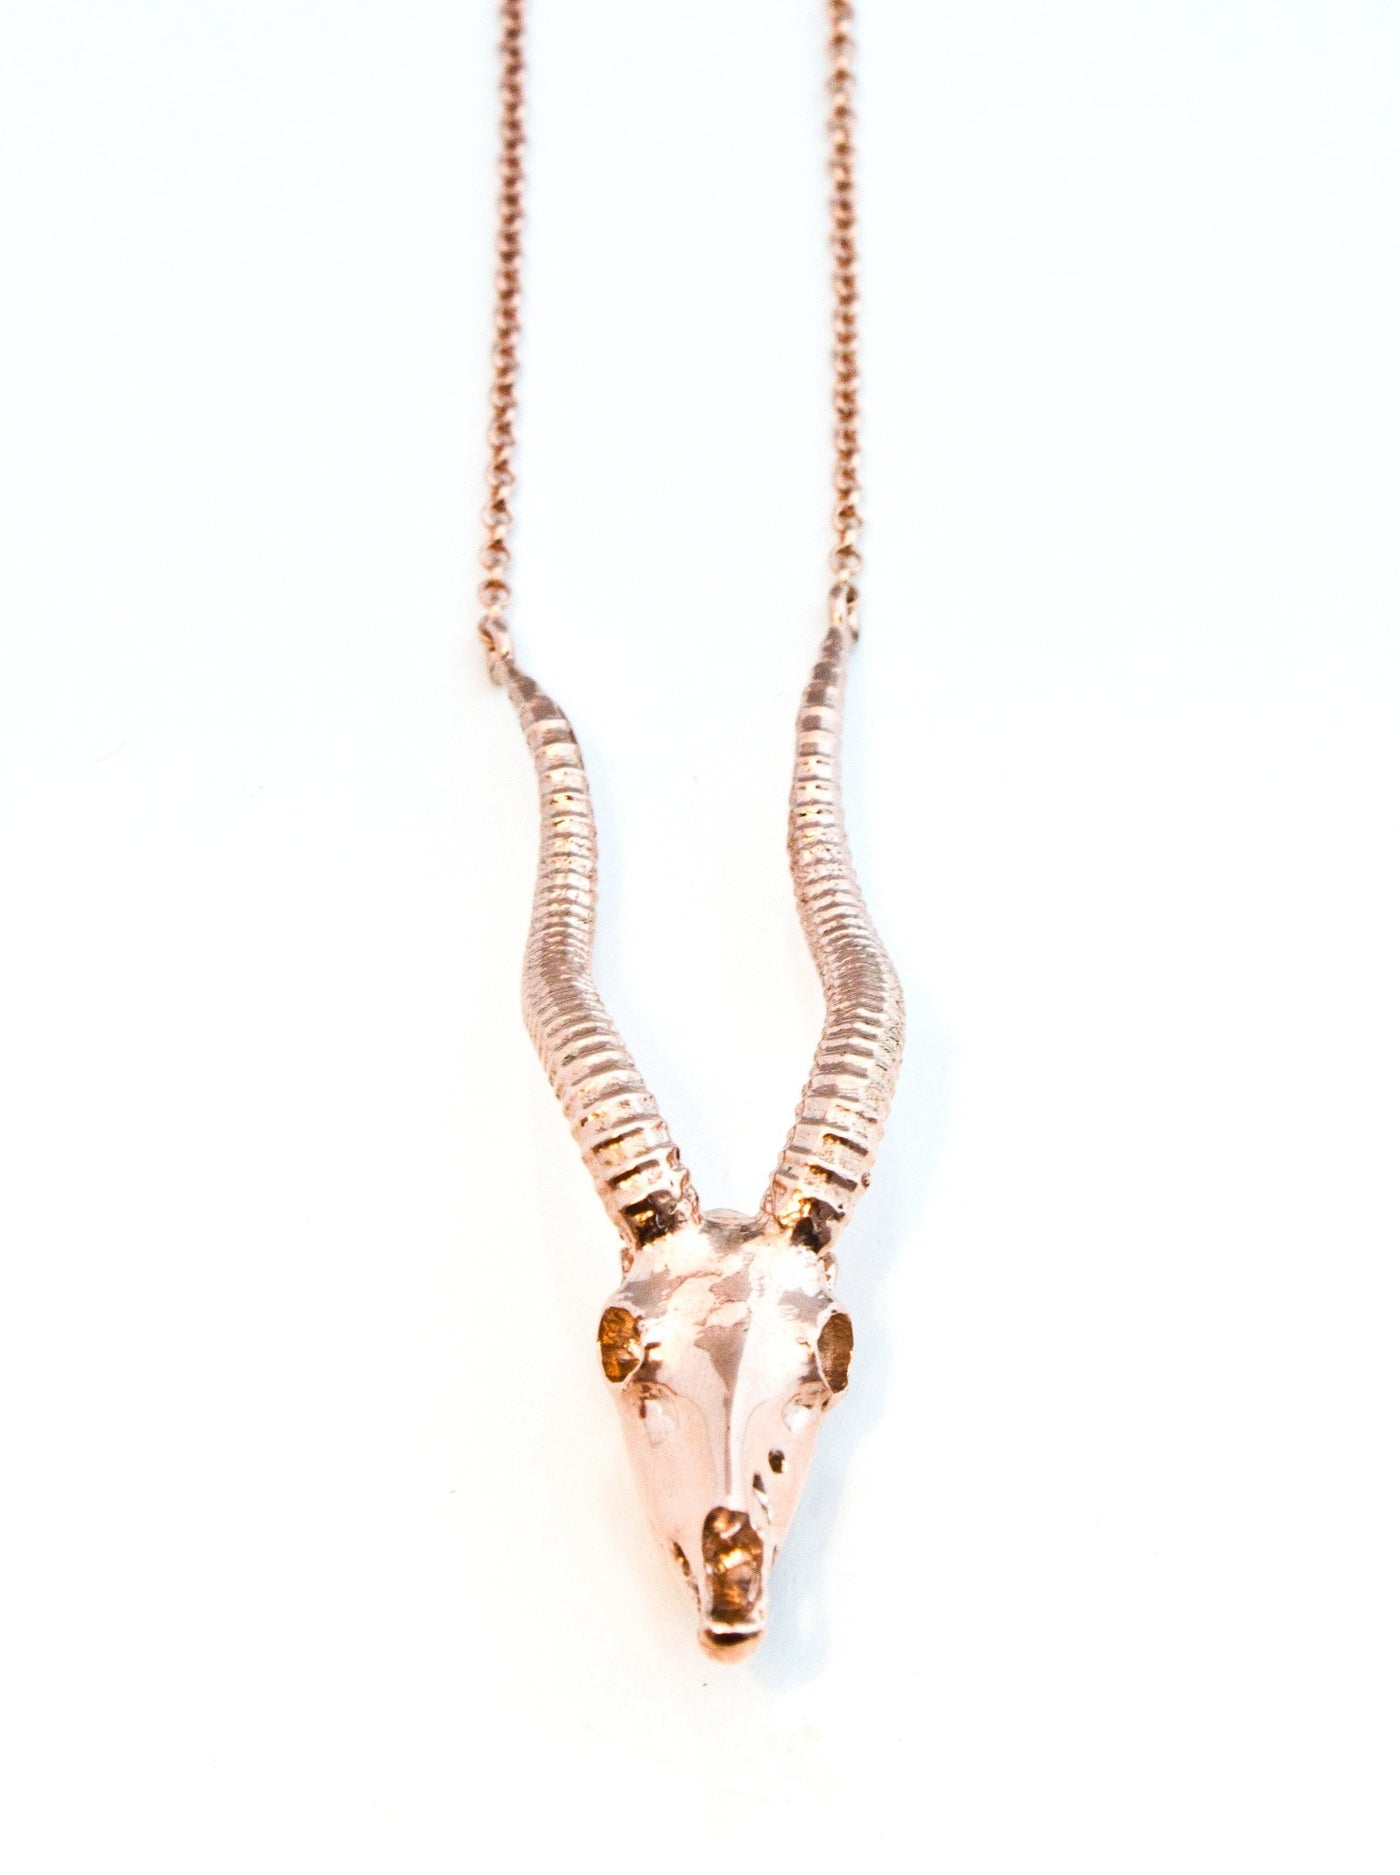 Antelope Necklace - The Clothing LoungeMoogu